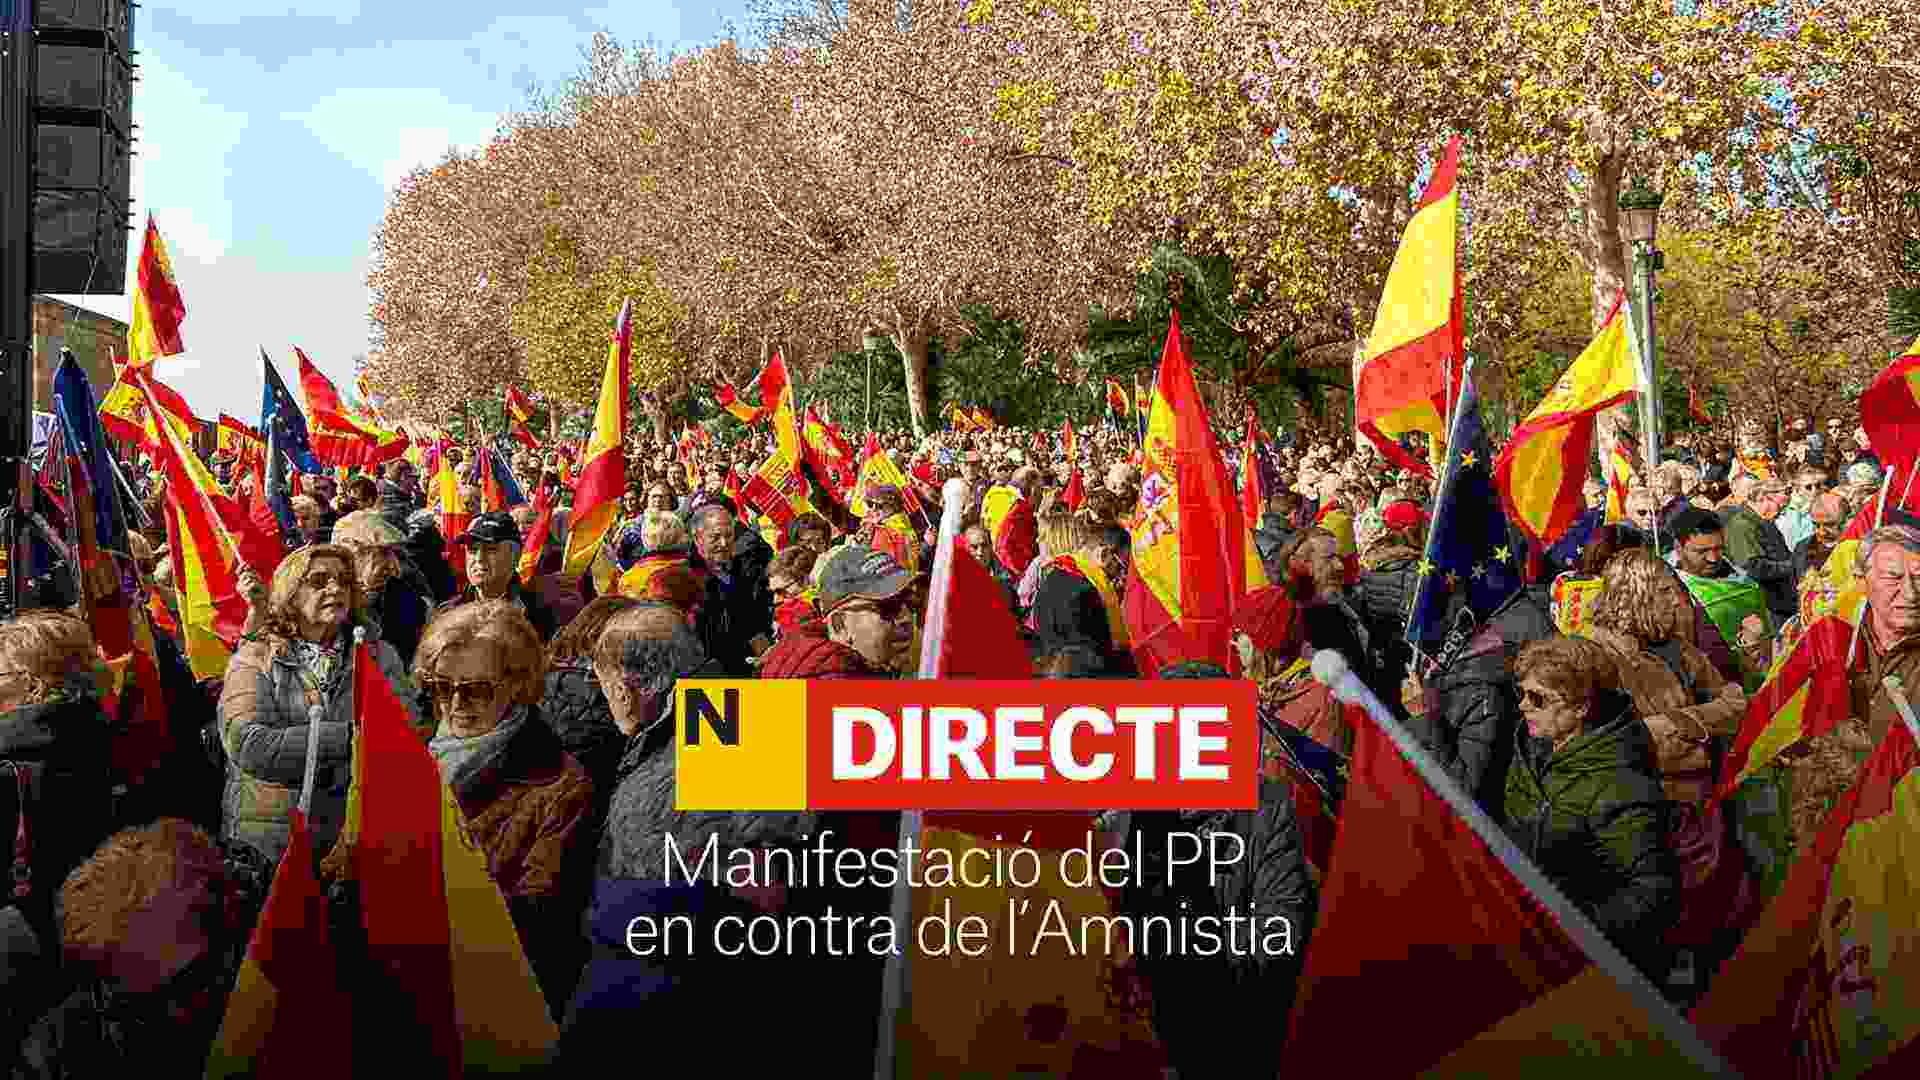 Manifestació a Madrid contra l'amnistia, avui, DIRECTE | Última hora de la protesta del PP